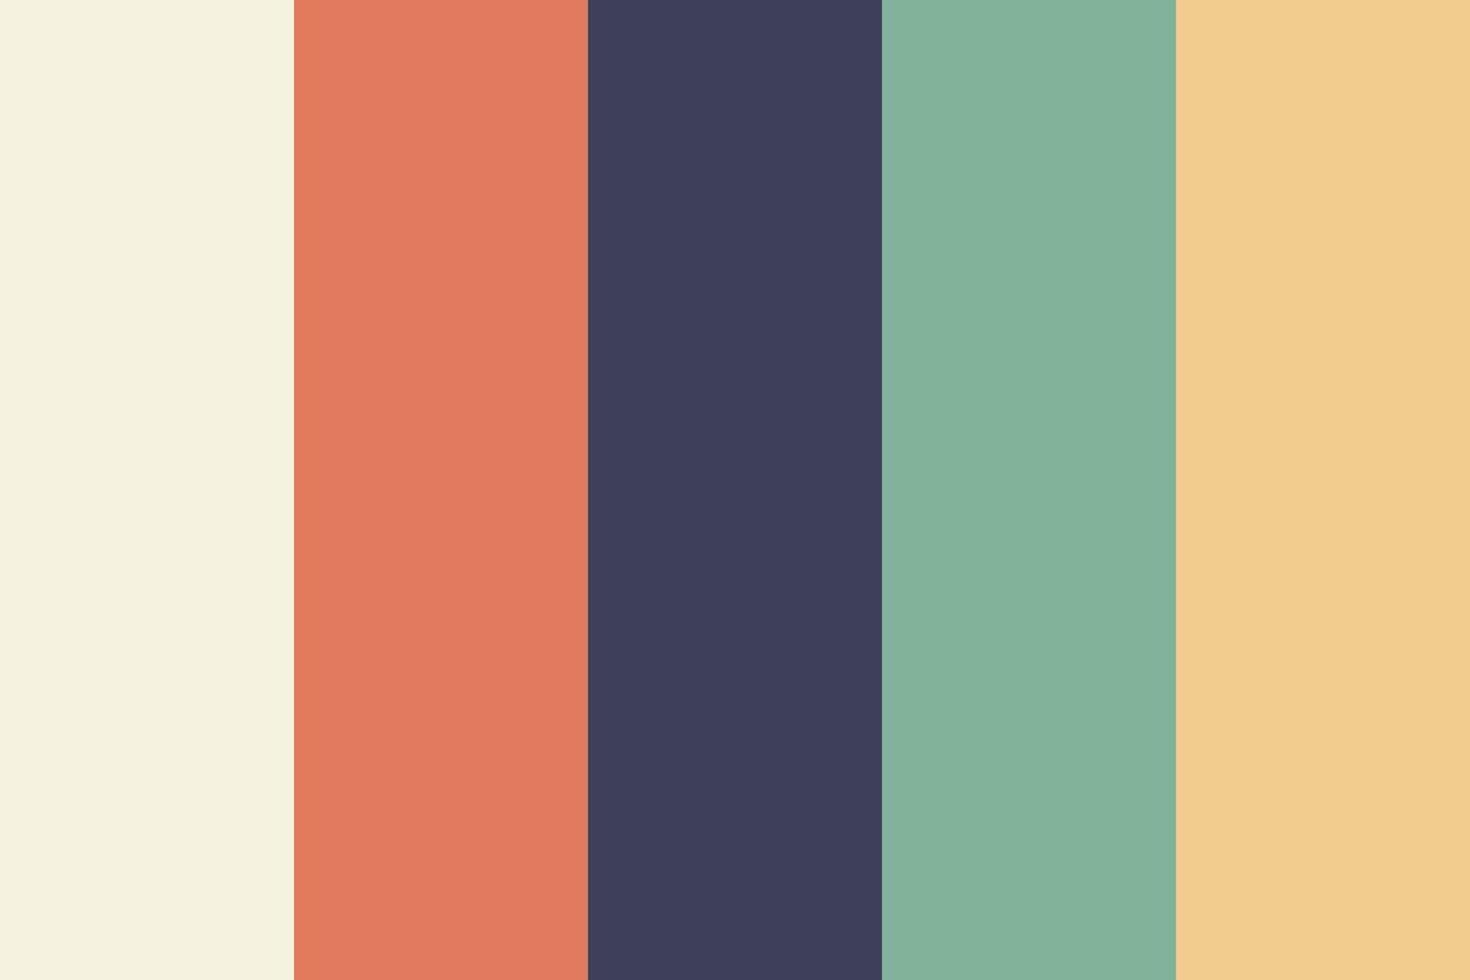 color schemes combinations palettes. Illustration CMYK colors for print. Vector color palette